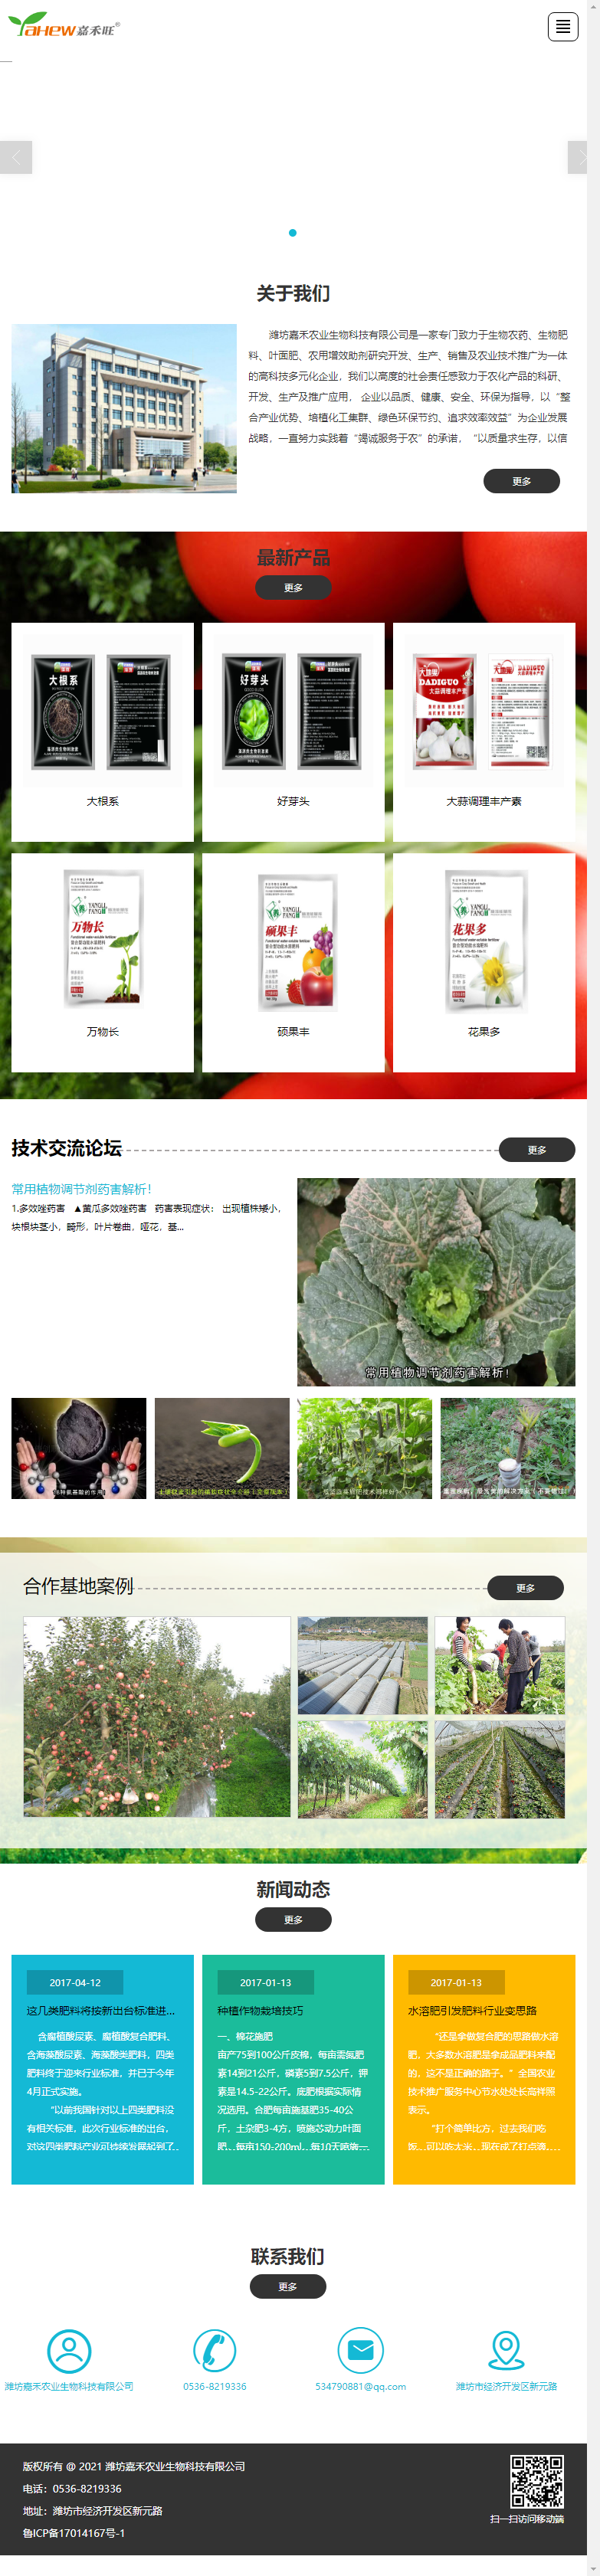 潍坊嘉禾农业生物科技有限公司网站案例